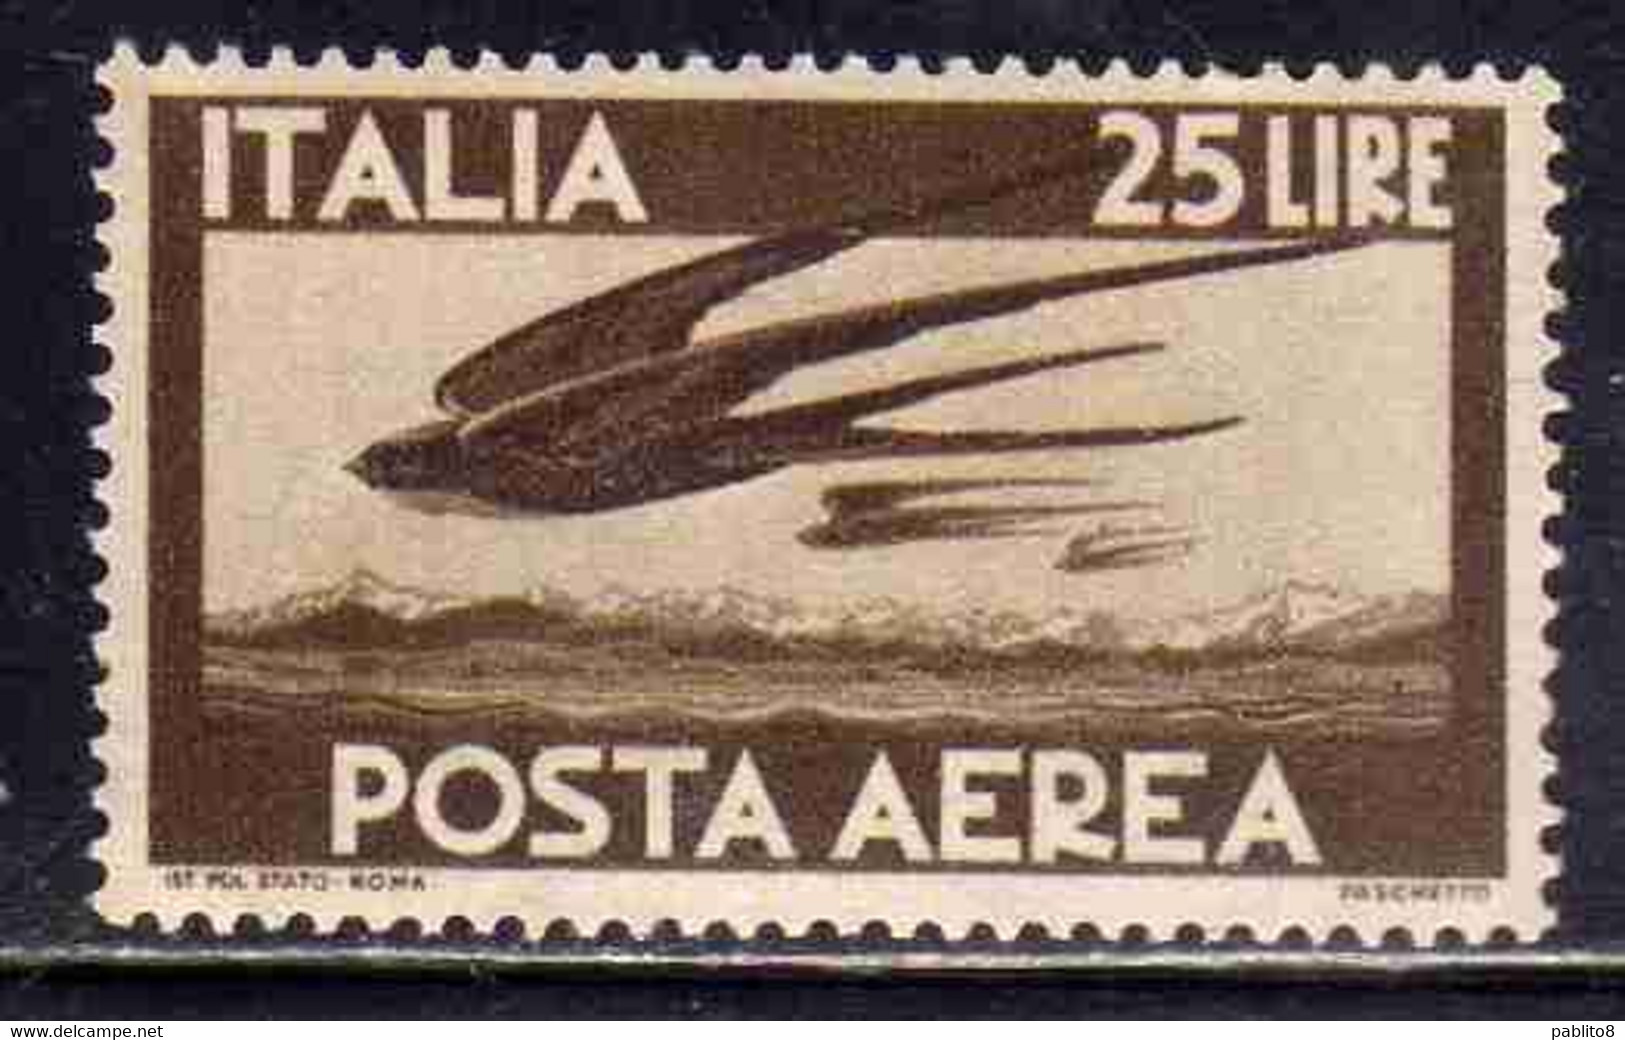 ITALY REPUBLIC ITALIA REPUBBLICA 1947 1955 DEMOCRATICA POSTA AEREA AIR MAIL COLORE CAMBIATO LIRE 25 BRUNO MNH - Luftpost